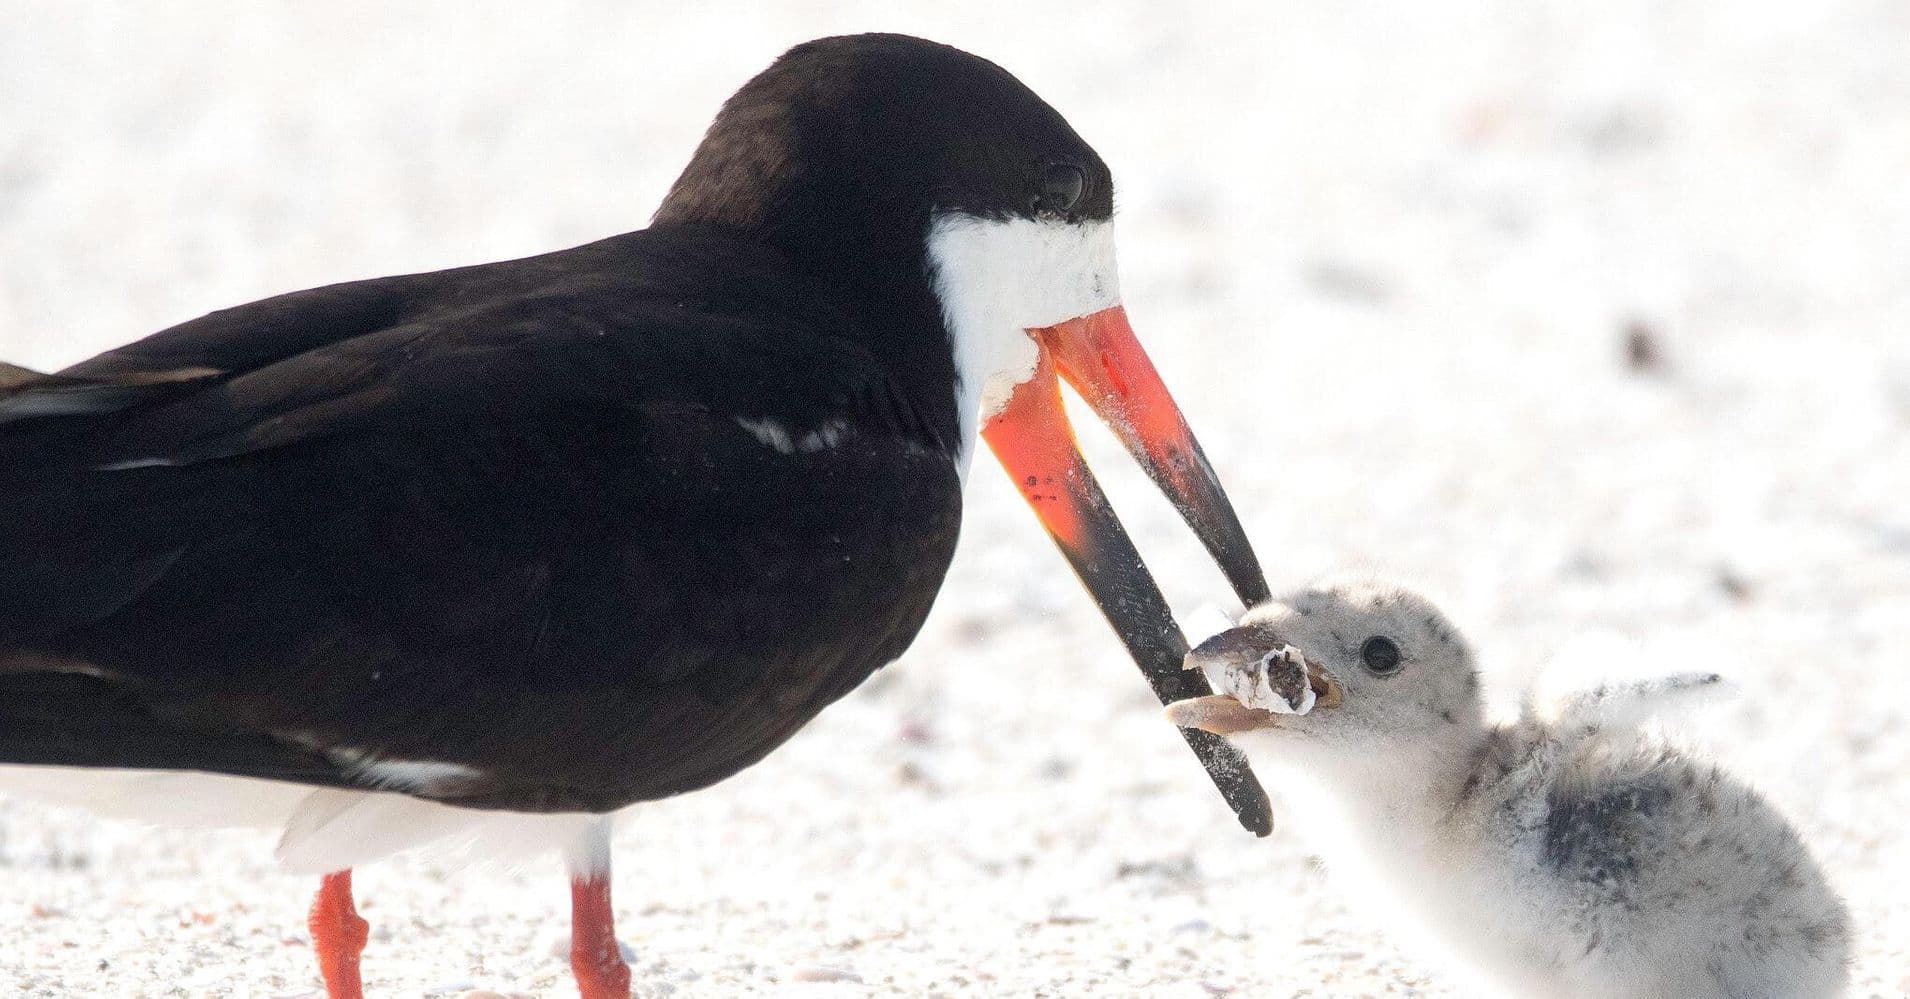 Cigicsikkel etette fiókáját egy madár a floridai tengerparton